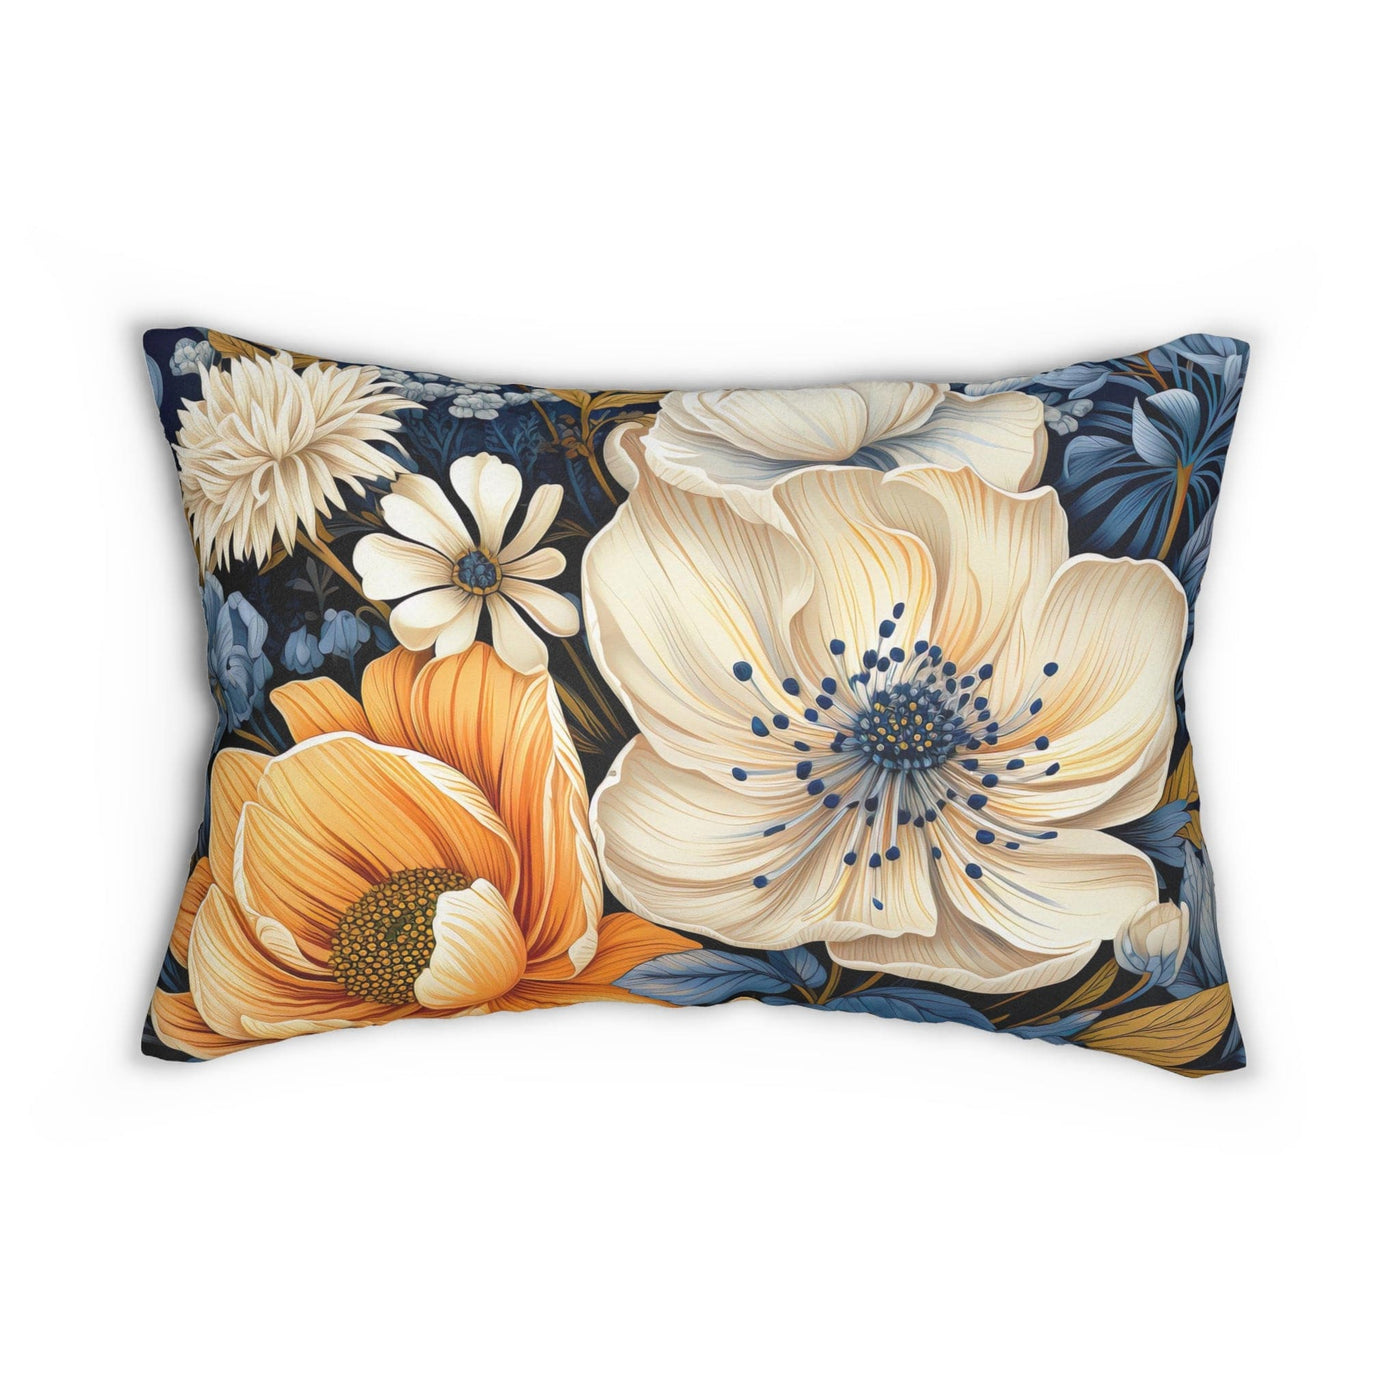 Decorative Lumbar Throw Pillow - Blue Floral Block Print Illustration